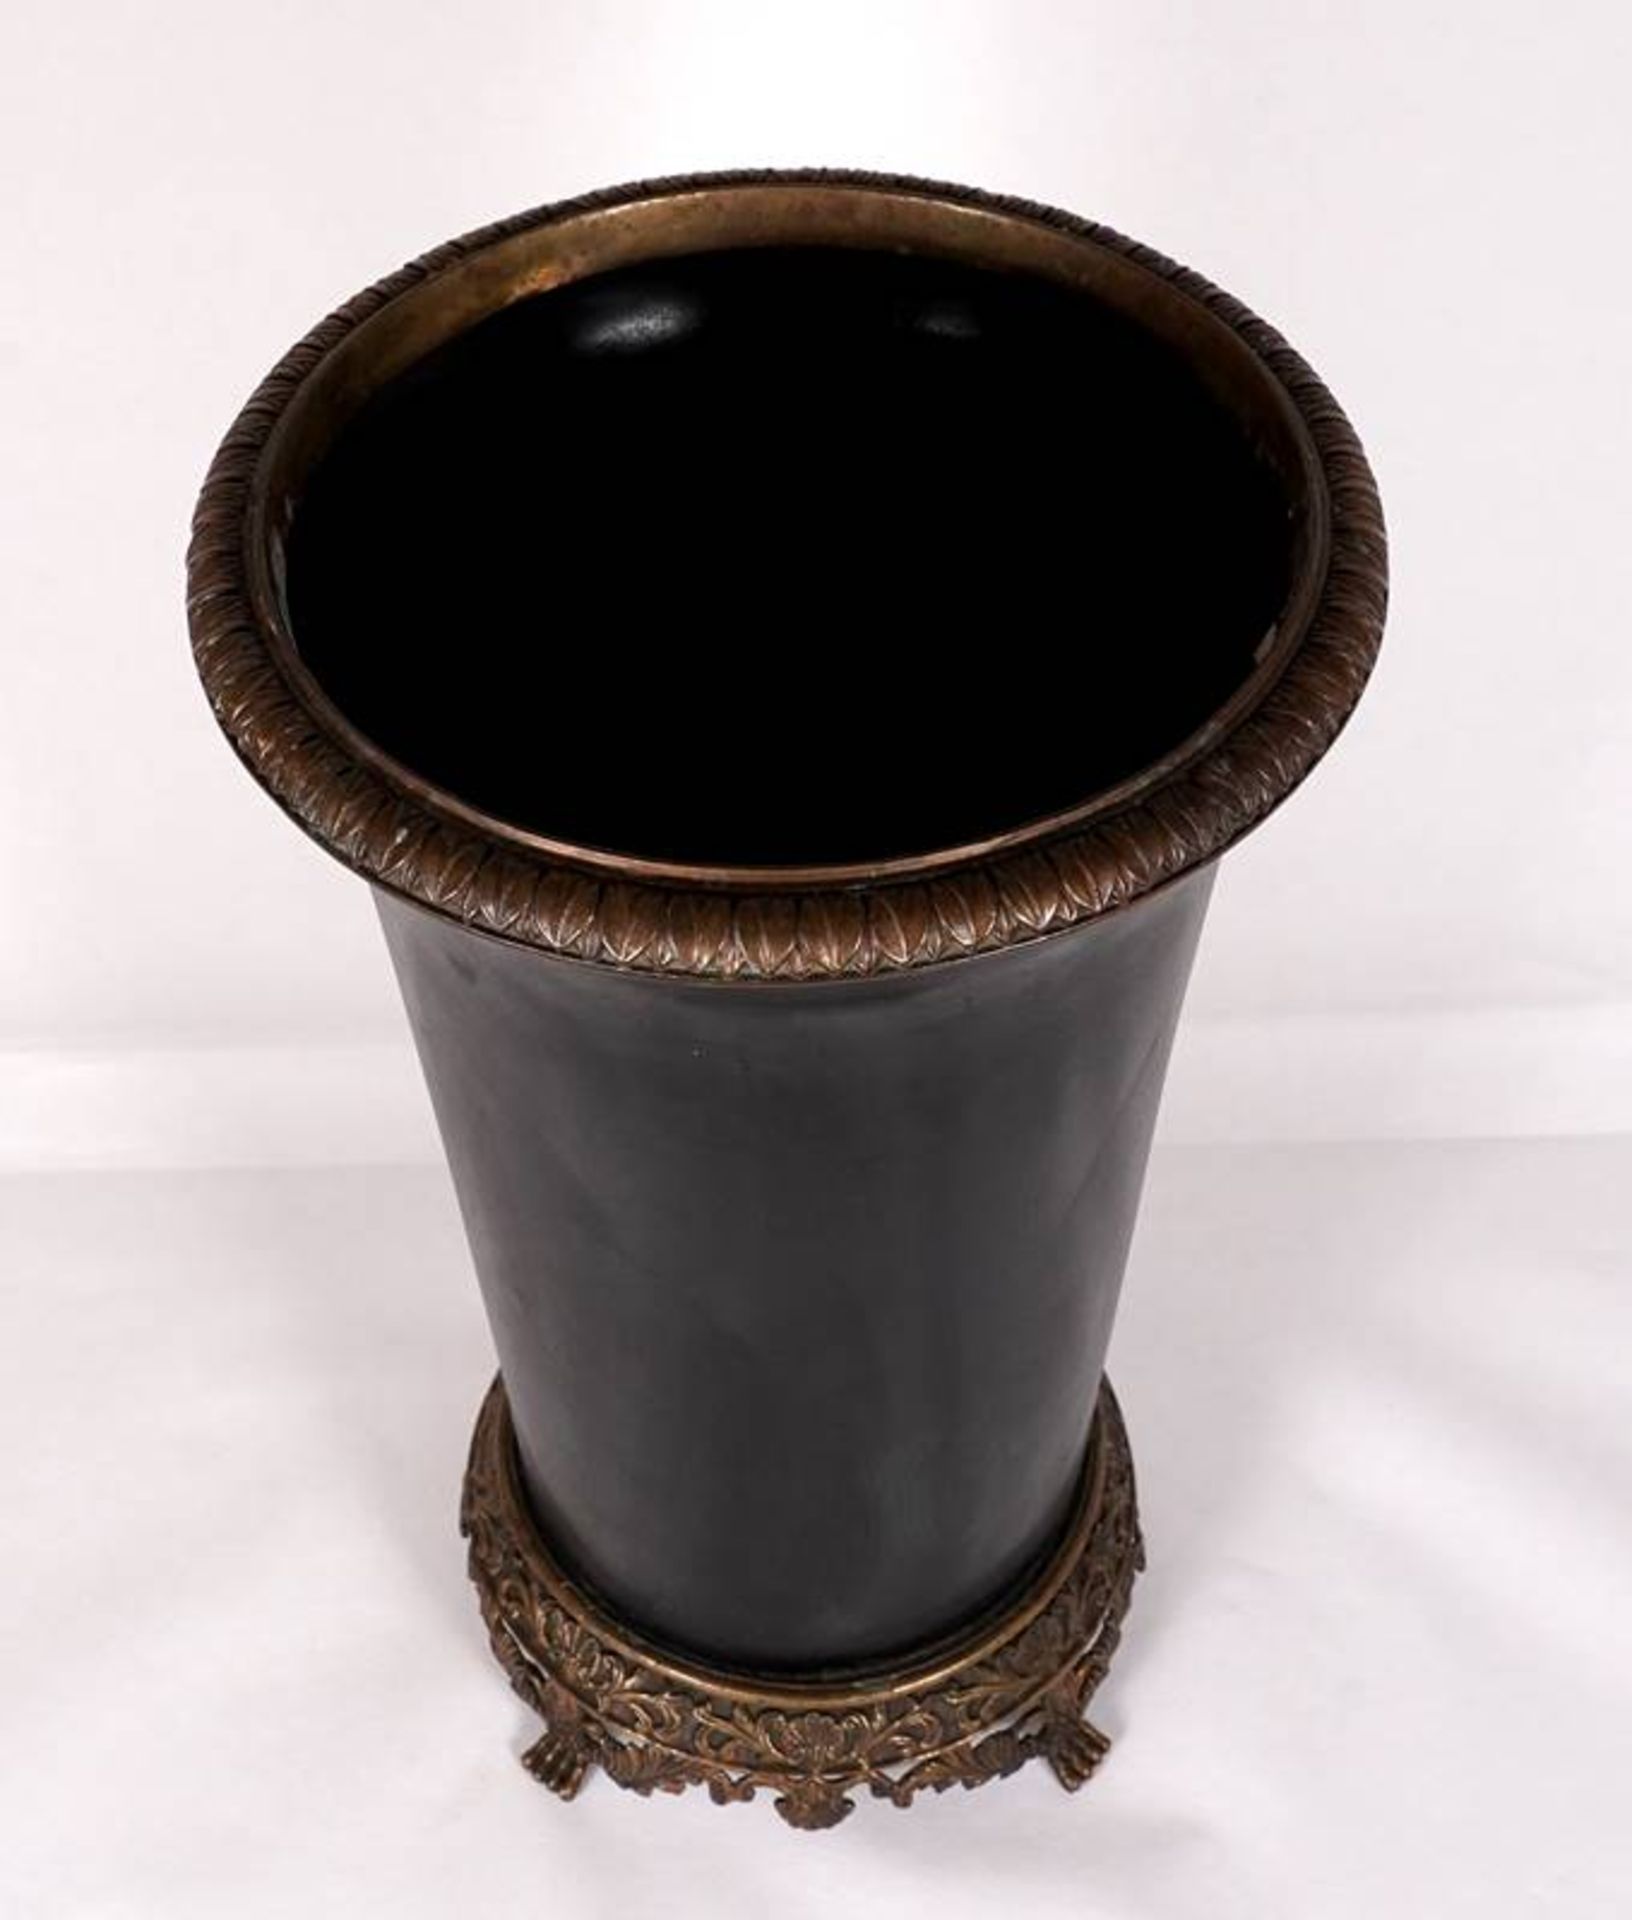 Bottom vase - Image 2 of 4